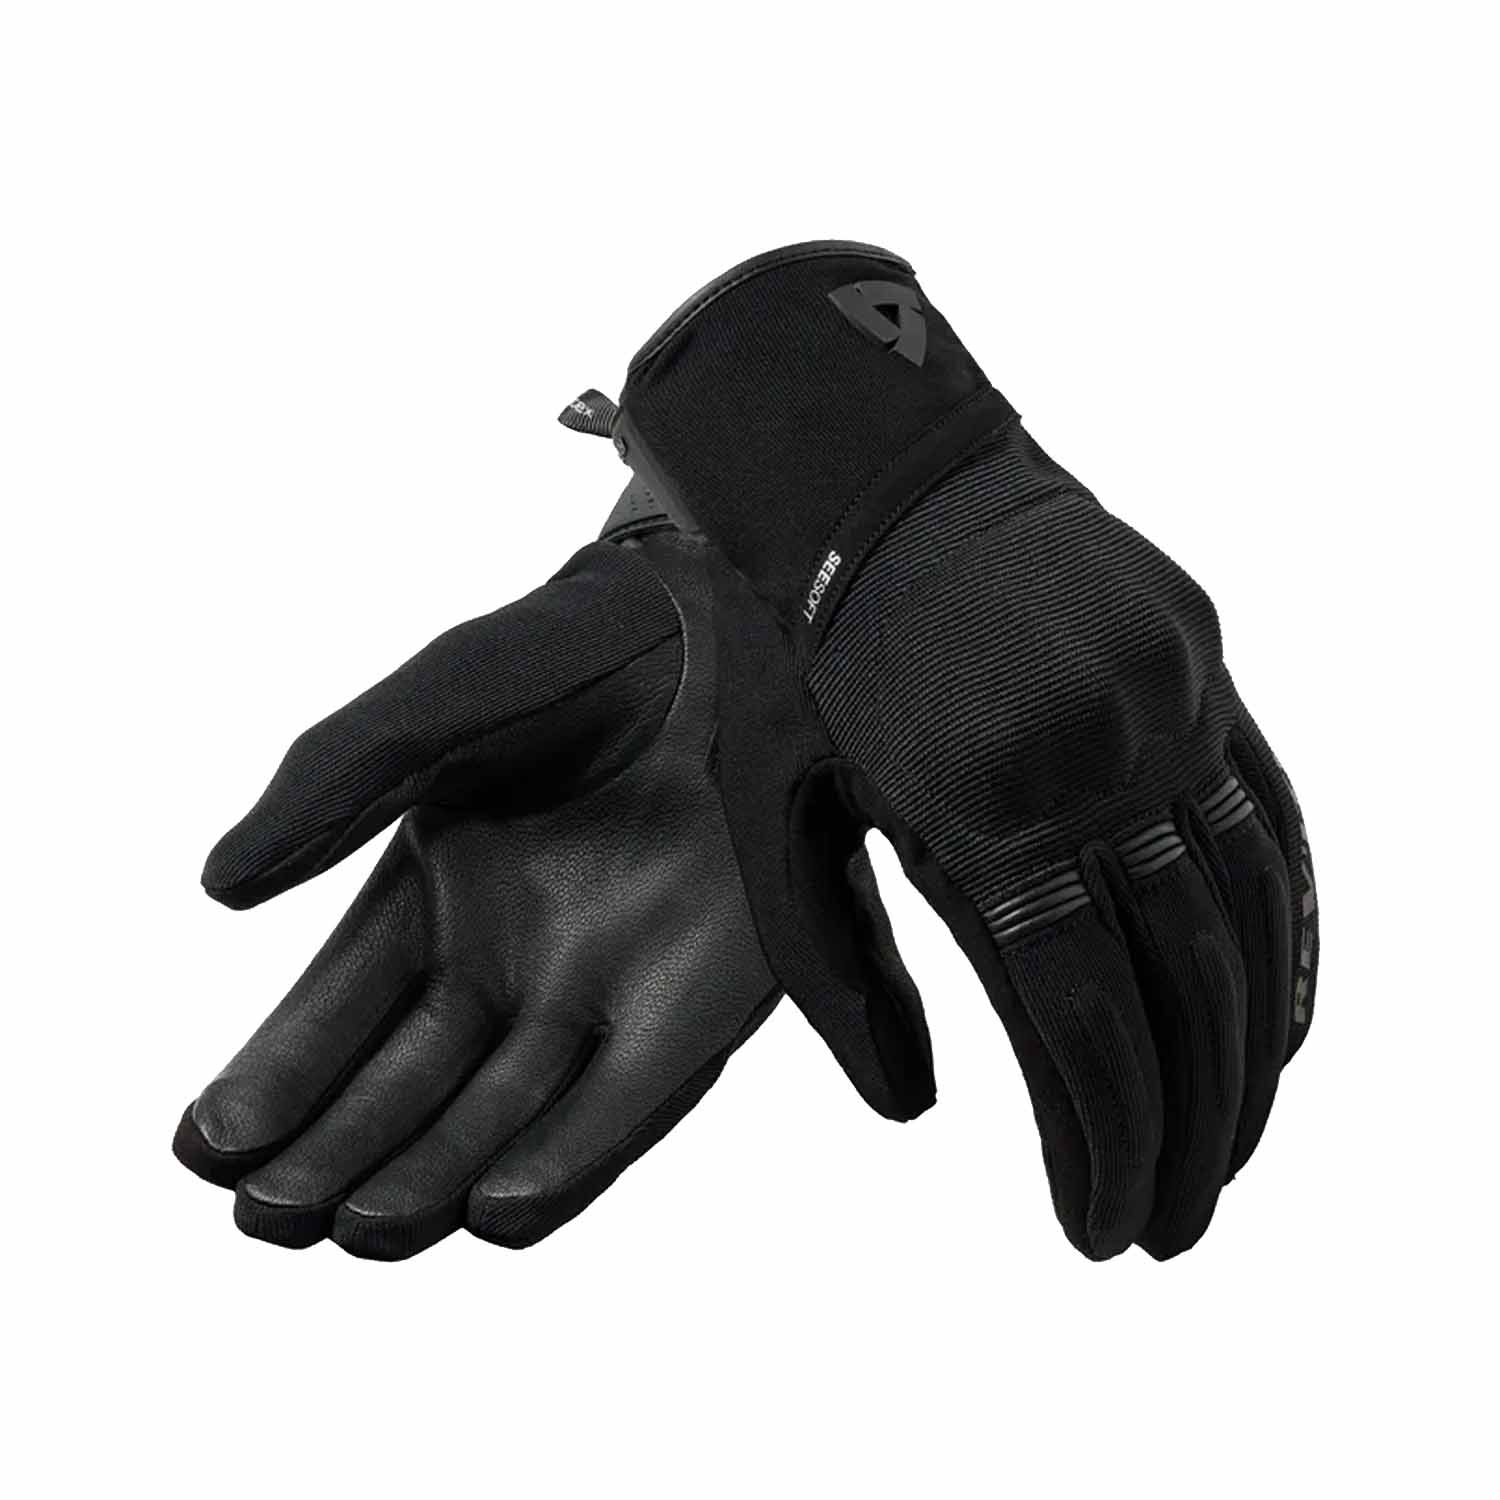 Image of EU REV'IT! Mosca 2 H2O Gloves Ladies Black Taille XXS